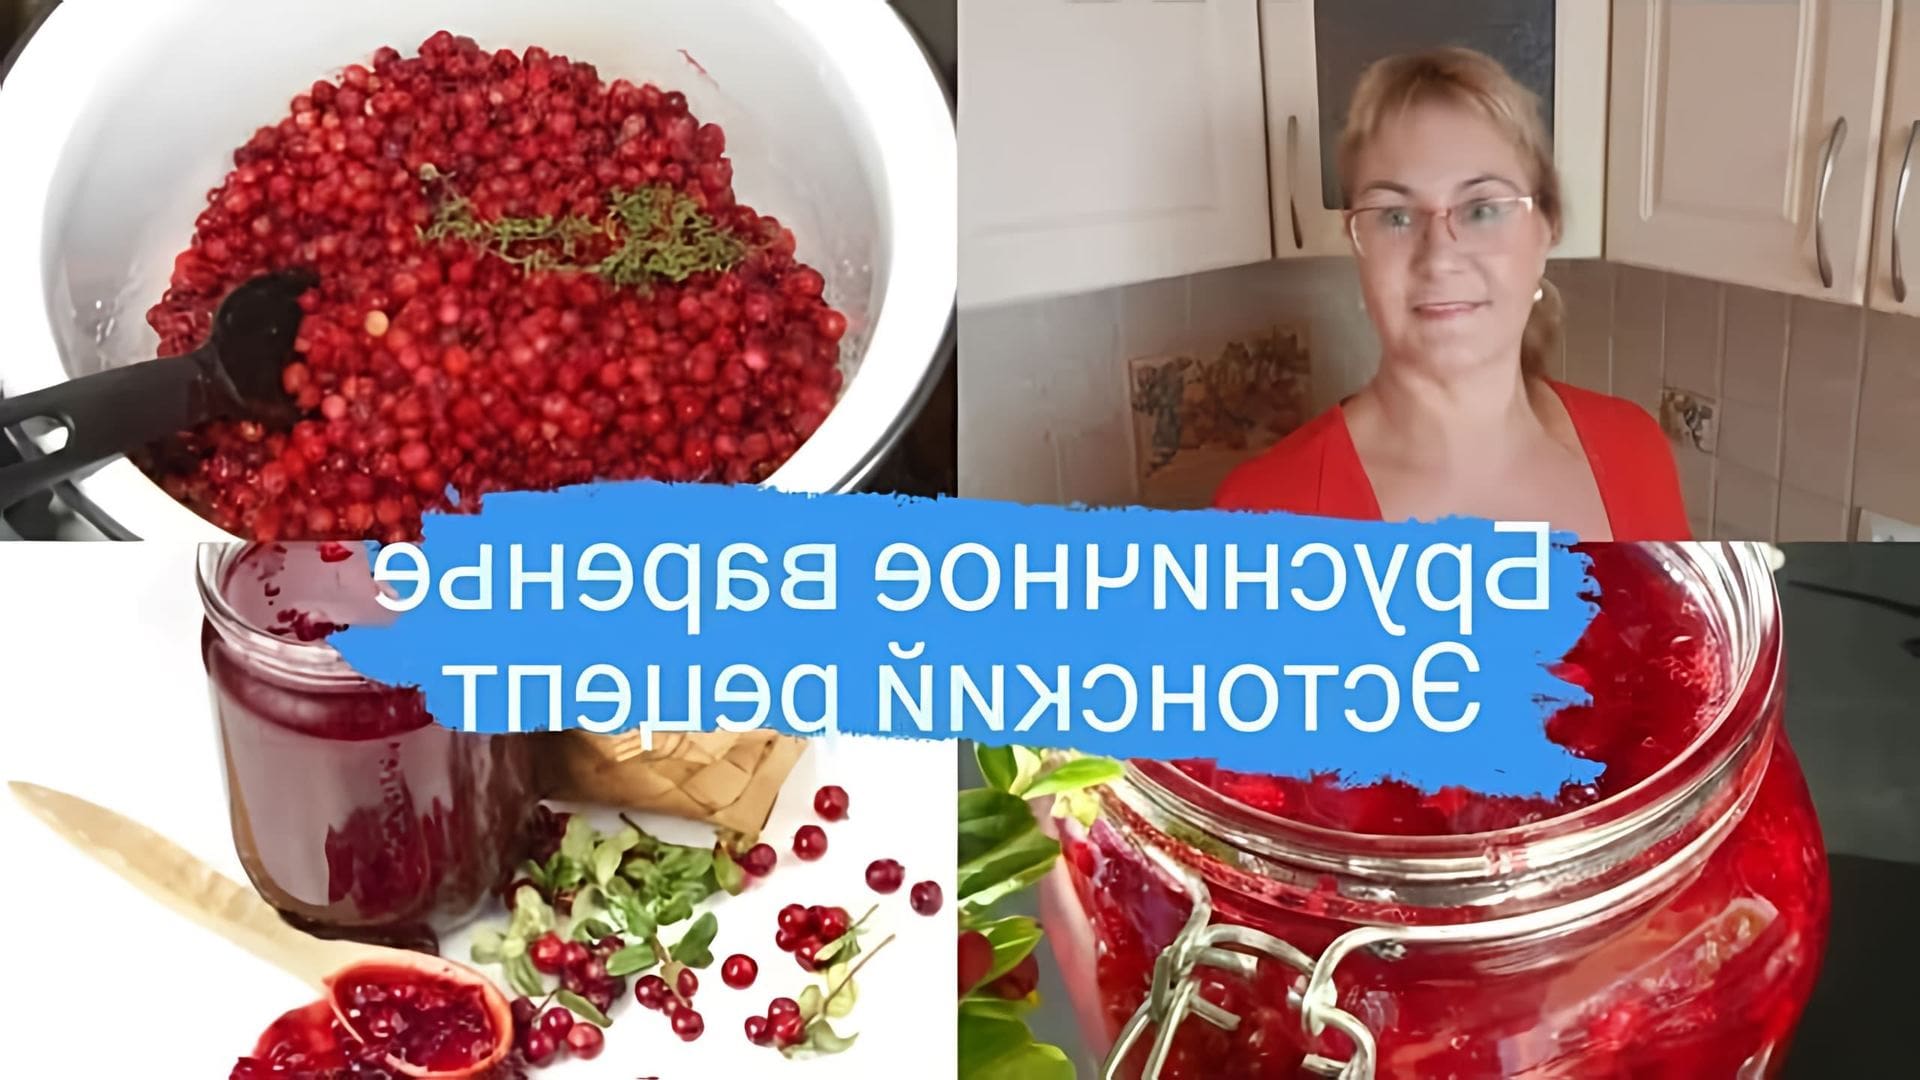 В данном видео демонстрируется процесс приготовления брусничного варенья по эстонскому рецепту